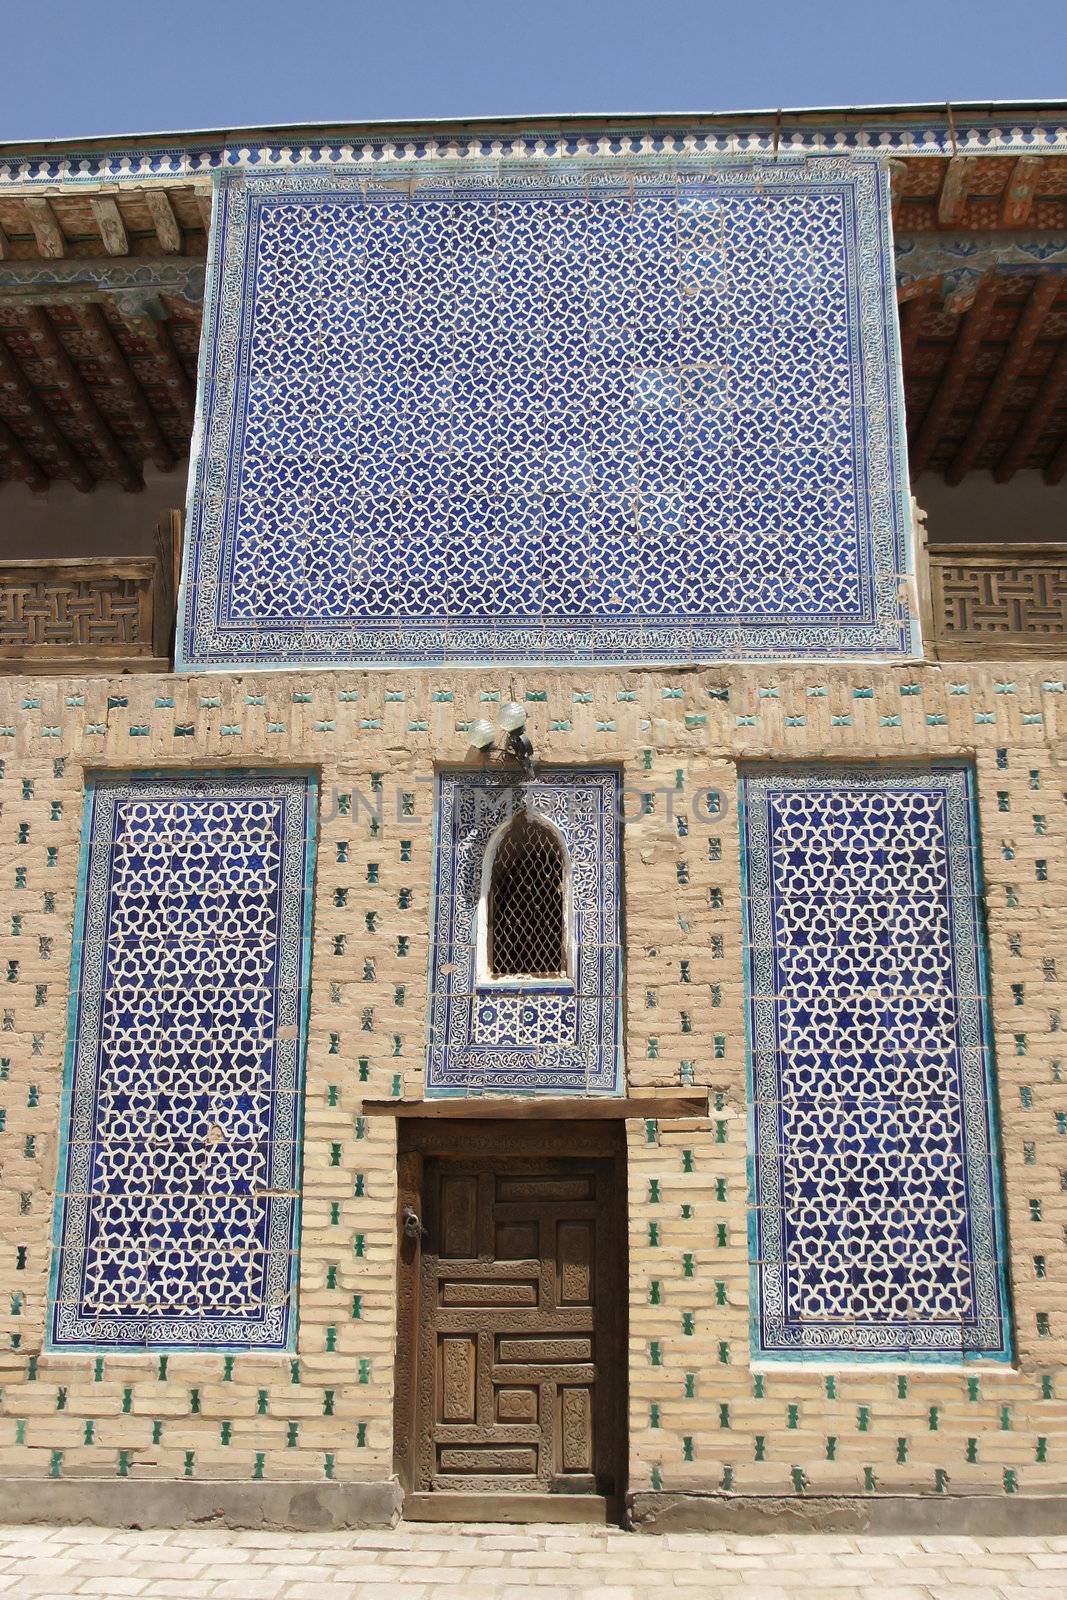 Palace Toshxovli, Khiva, Uzbekistan by alfotokunst